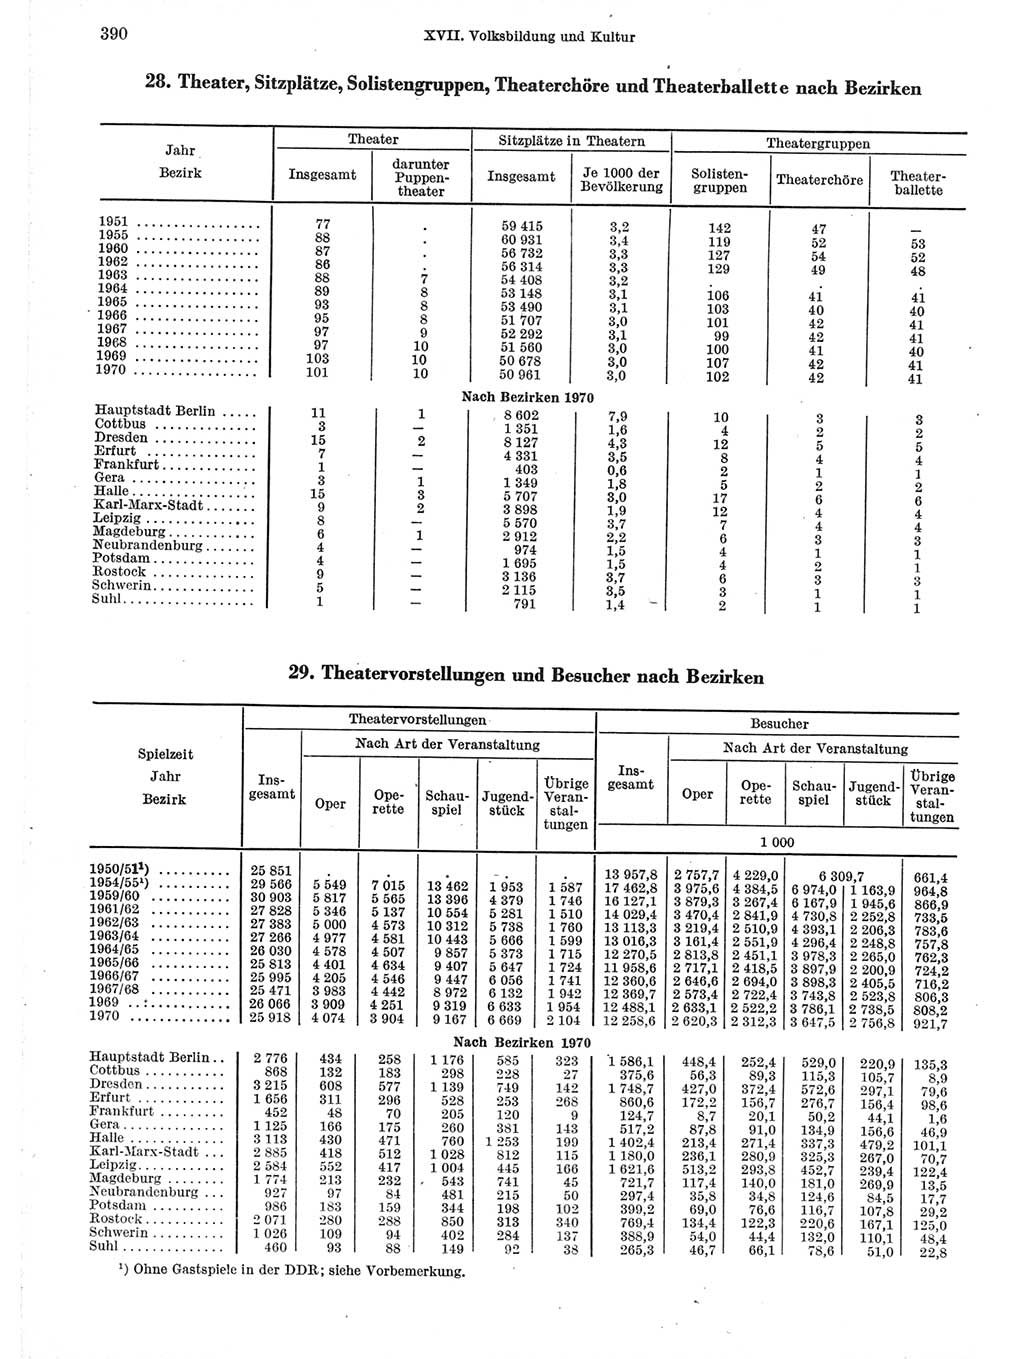 Statistisches Jahrbuch der Deutschen Demokratischen Republik (DDR) 1971, Seite 390 (Stat. Jb. DDR 1971, S. 390)